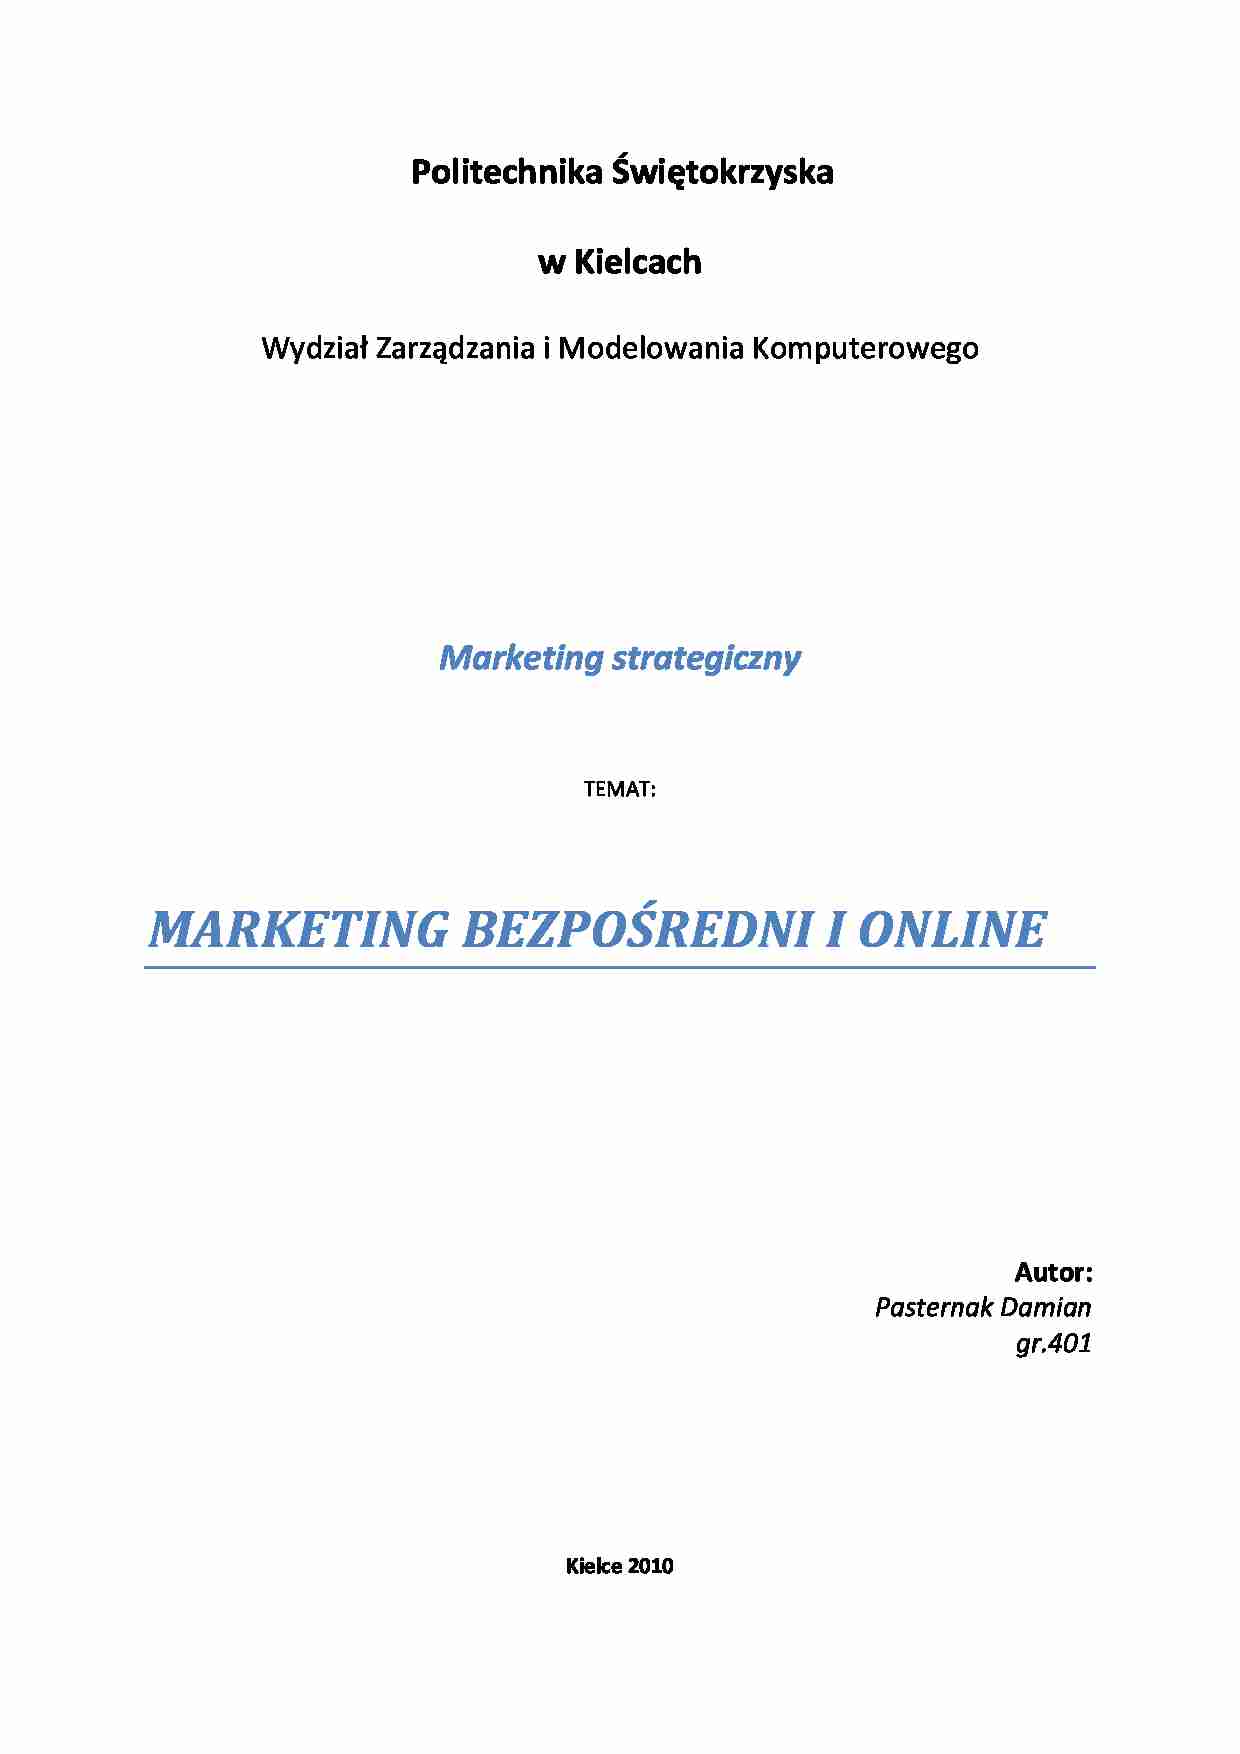 Marketing bezposredni i on-line-praca zaliczeniowa z wykładu - strona 1